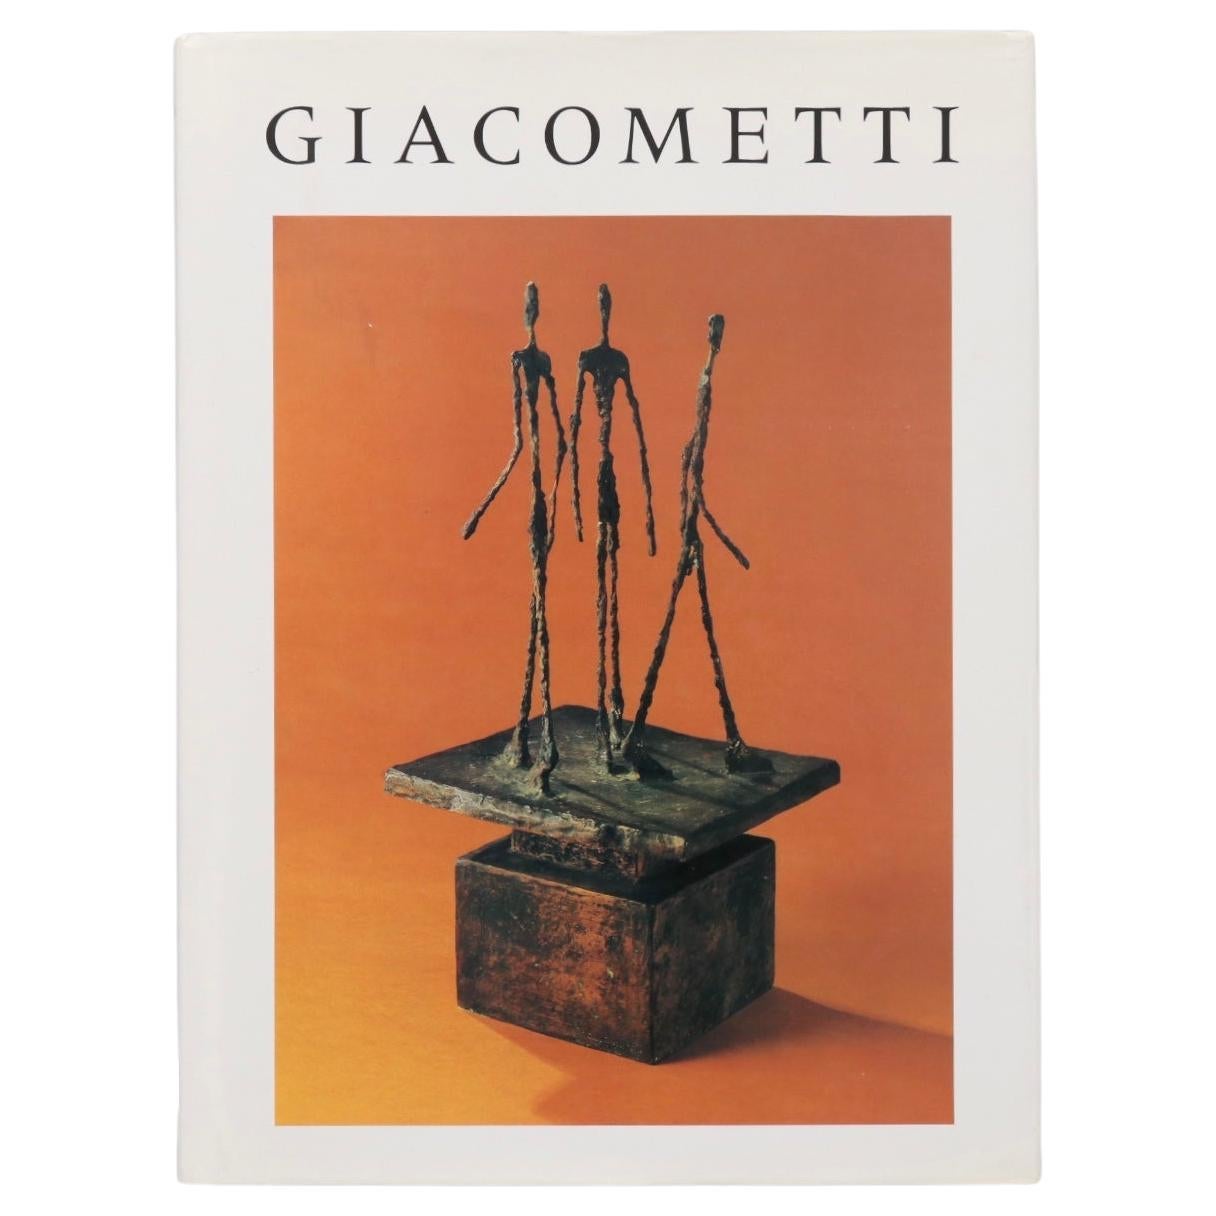 Giacometti by Bernard Lamarche-Vadel